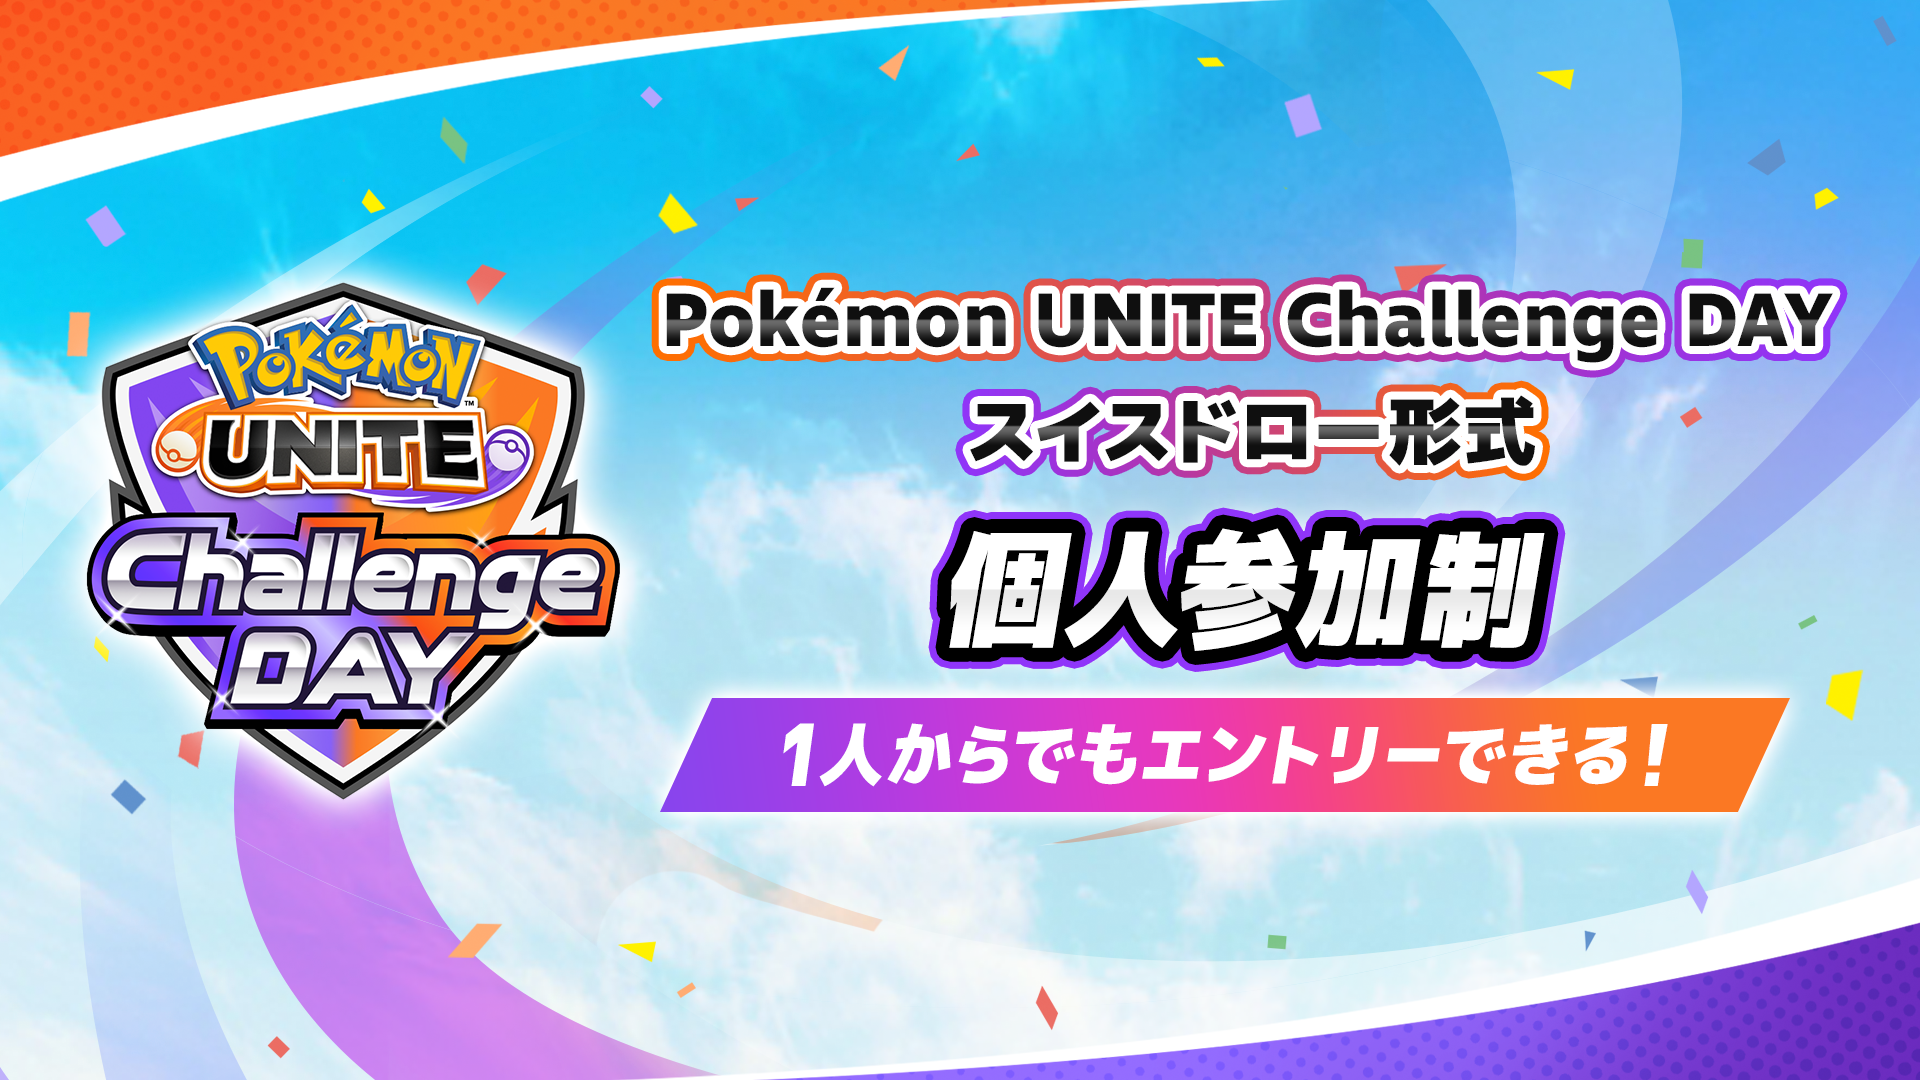 Pokemon UNITE Challenge DAY 04.02 個人参加制 スイスドロー形式 午前の部・午後の部 計3イベント開催！